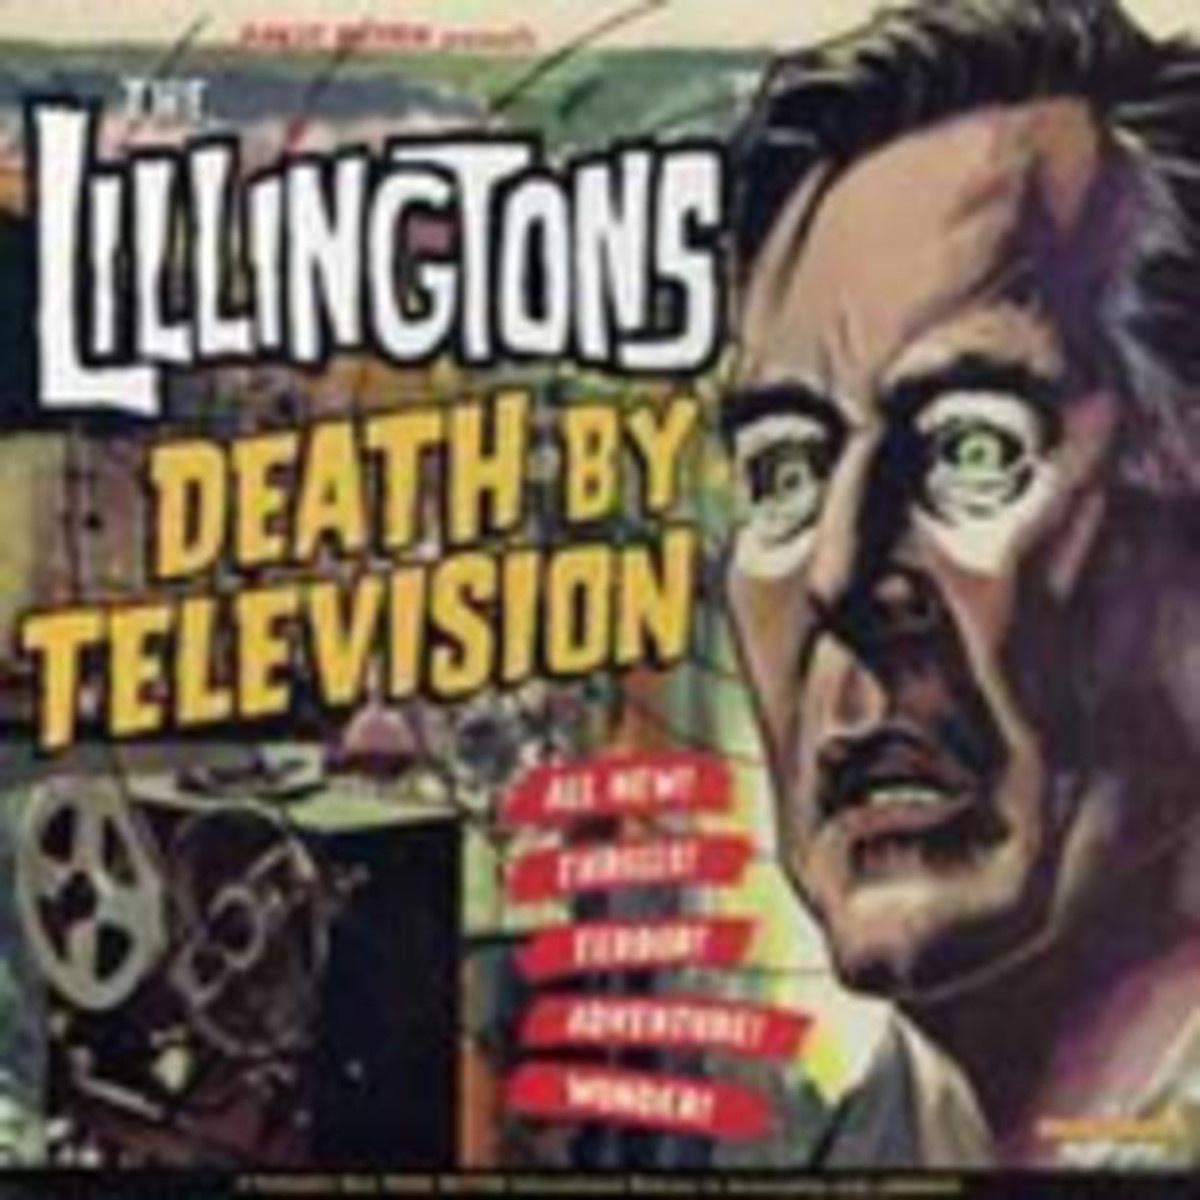 The Lillingtons - X-Ray Specs